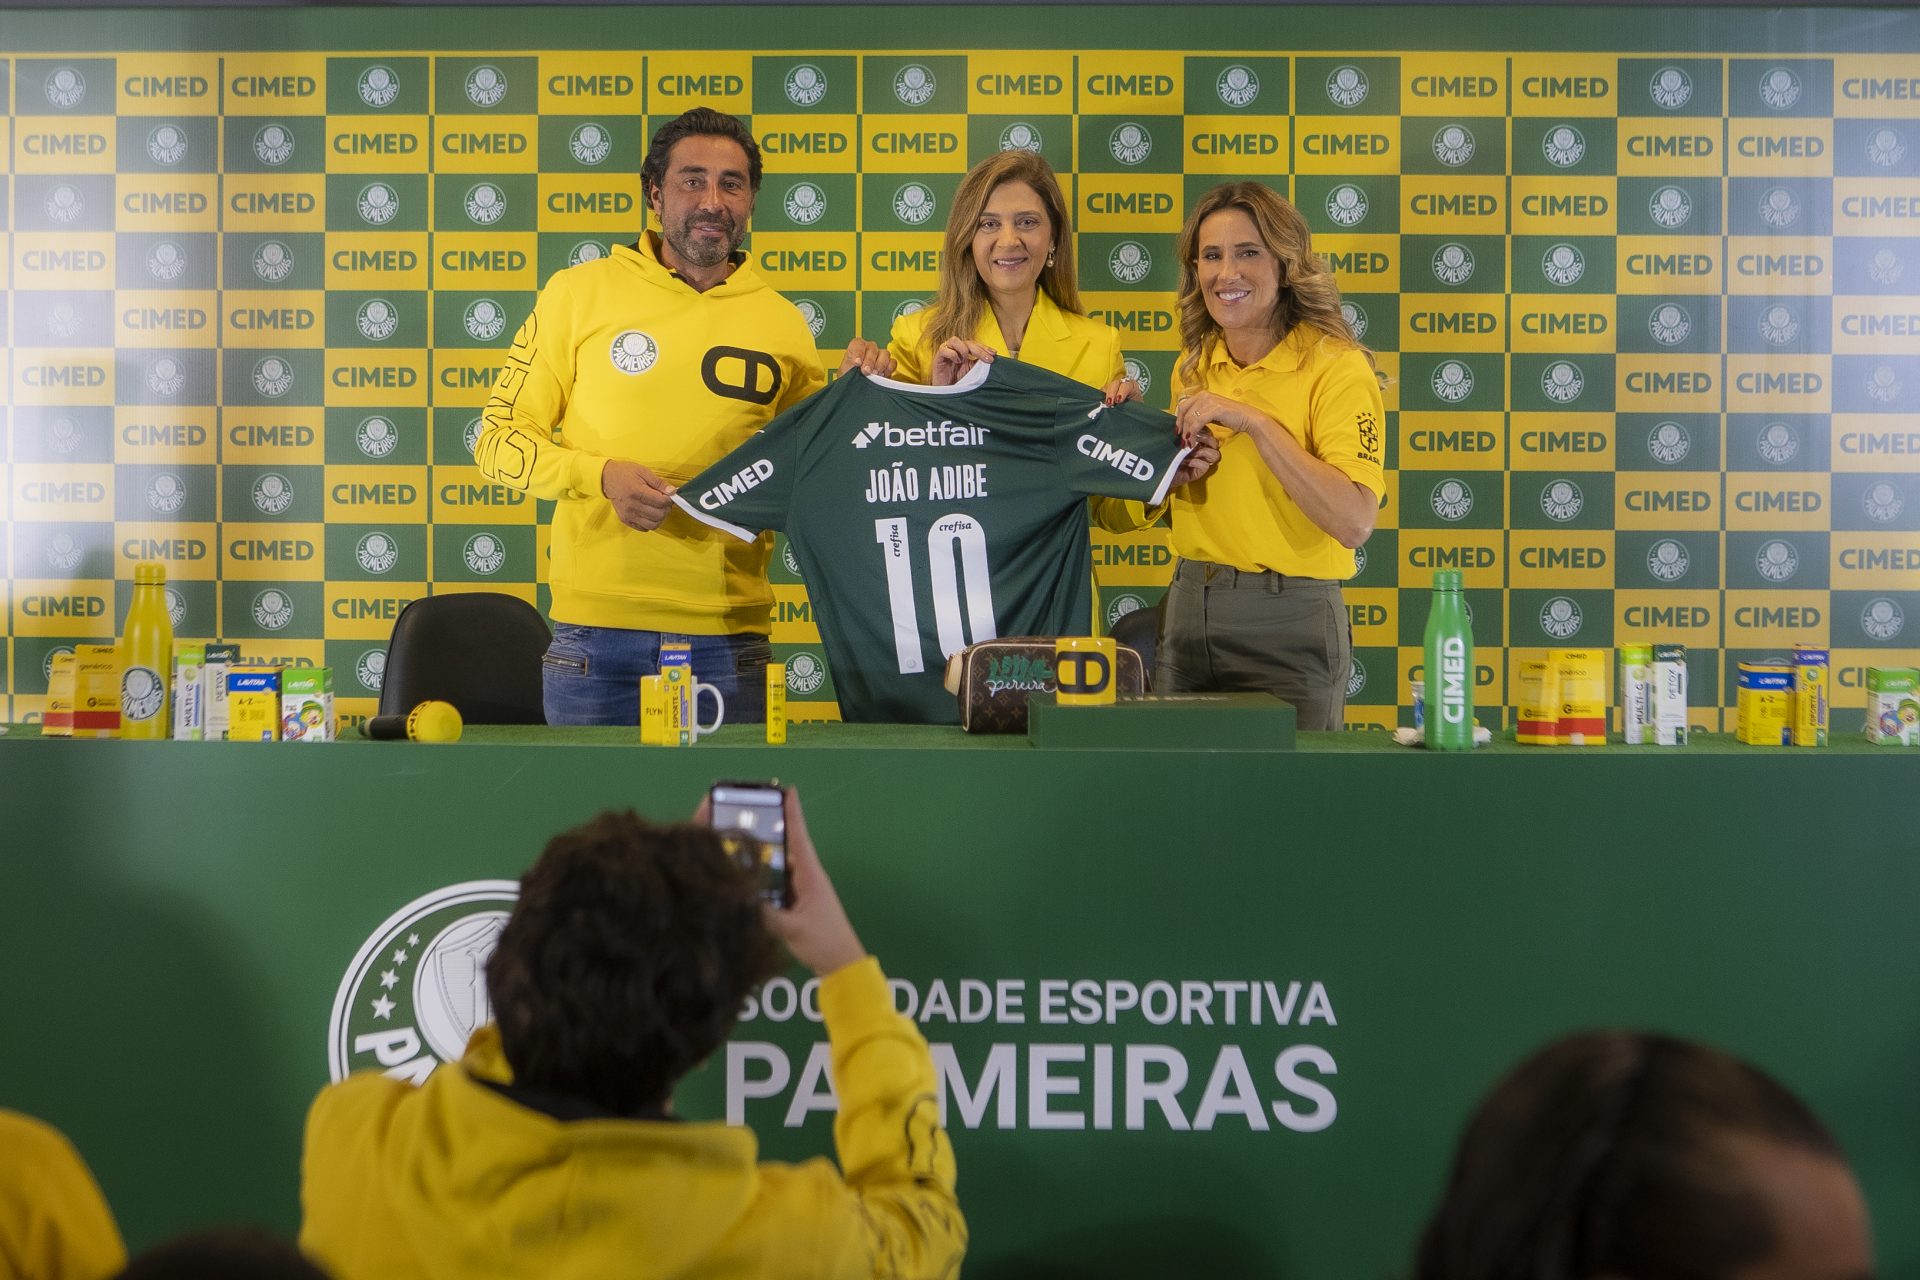 União do amarelo e verde: Cimed e Palmeiras anunciam parceria inédita com ativações e experiências para torcedores e jogadores